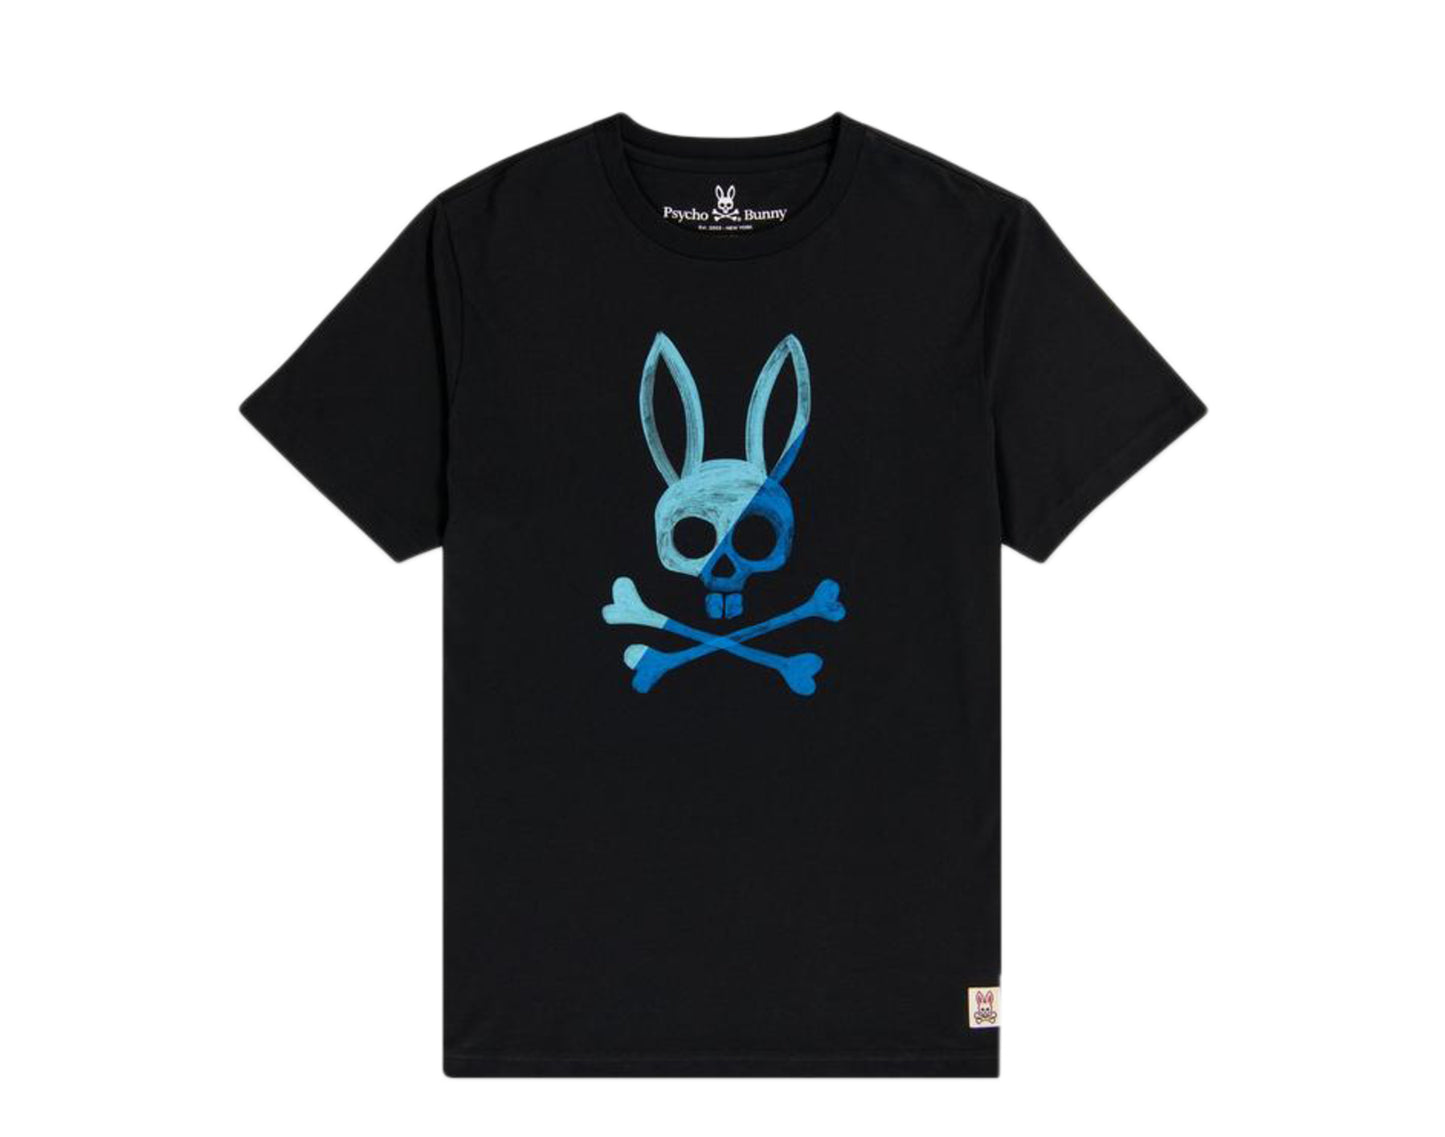 Psycho Bunny Andover Graphic Black/Blue Men's Tee Shirt B6U999L1PC-BLK